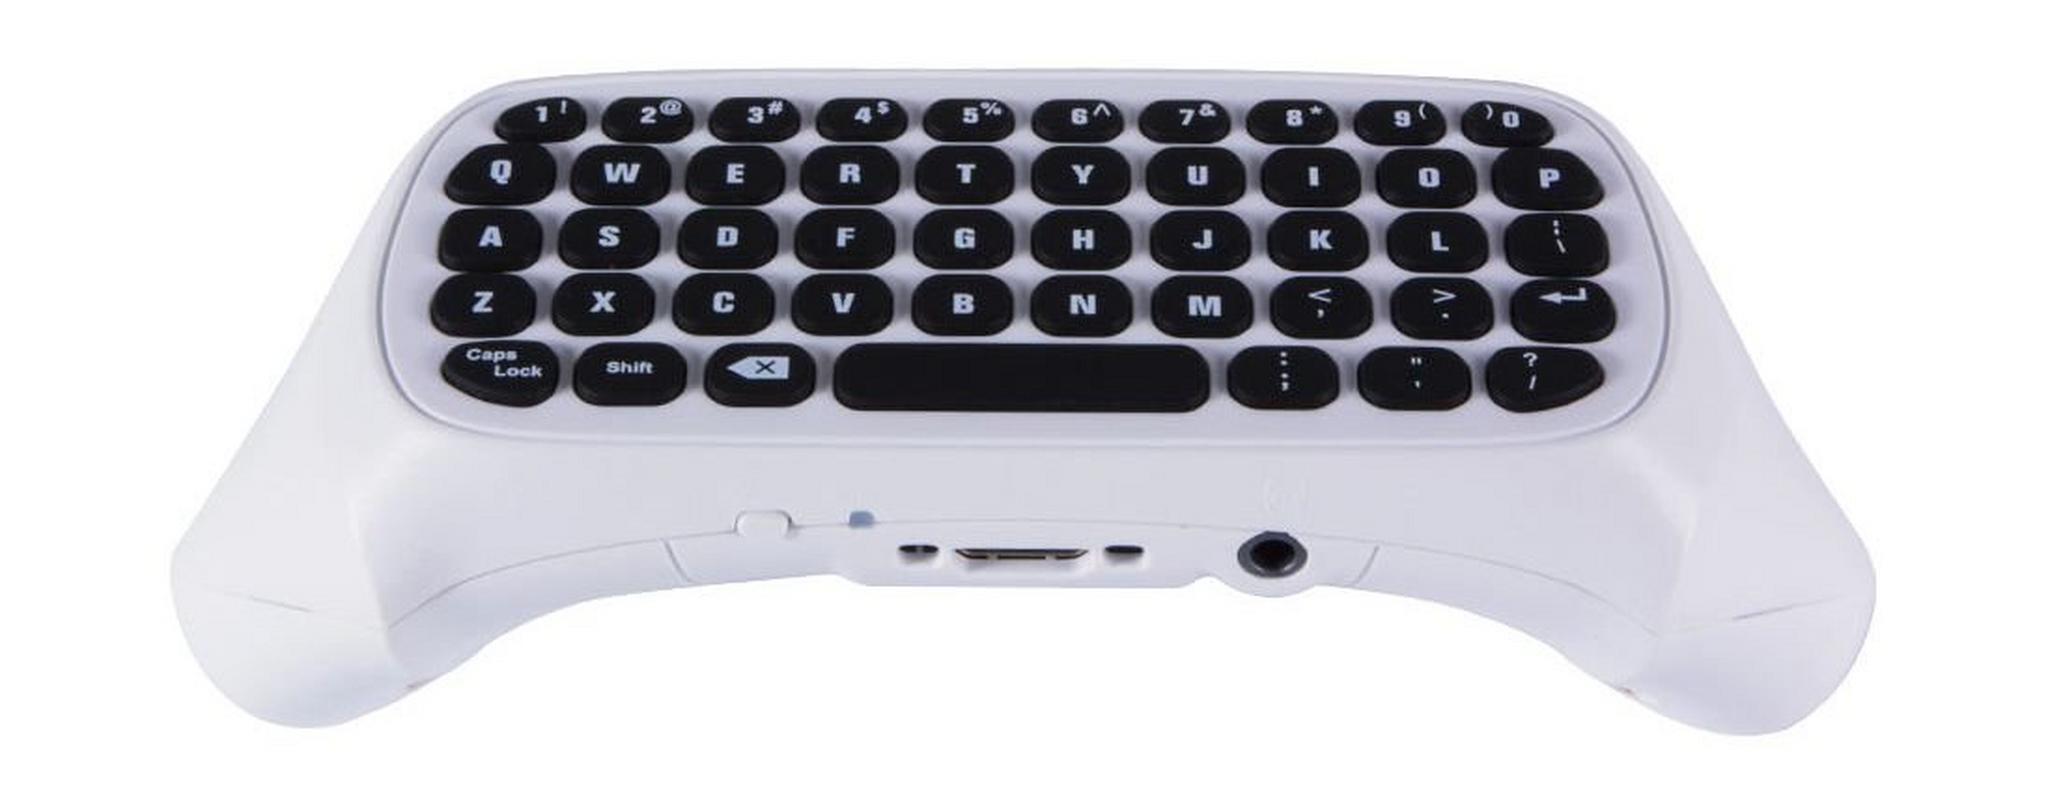 لوحة المفاتيح اللاسلكية الصغيرة المُلحقة بيد التحكم لأكس بوكس ون - أبيض